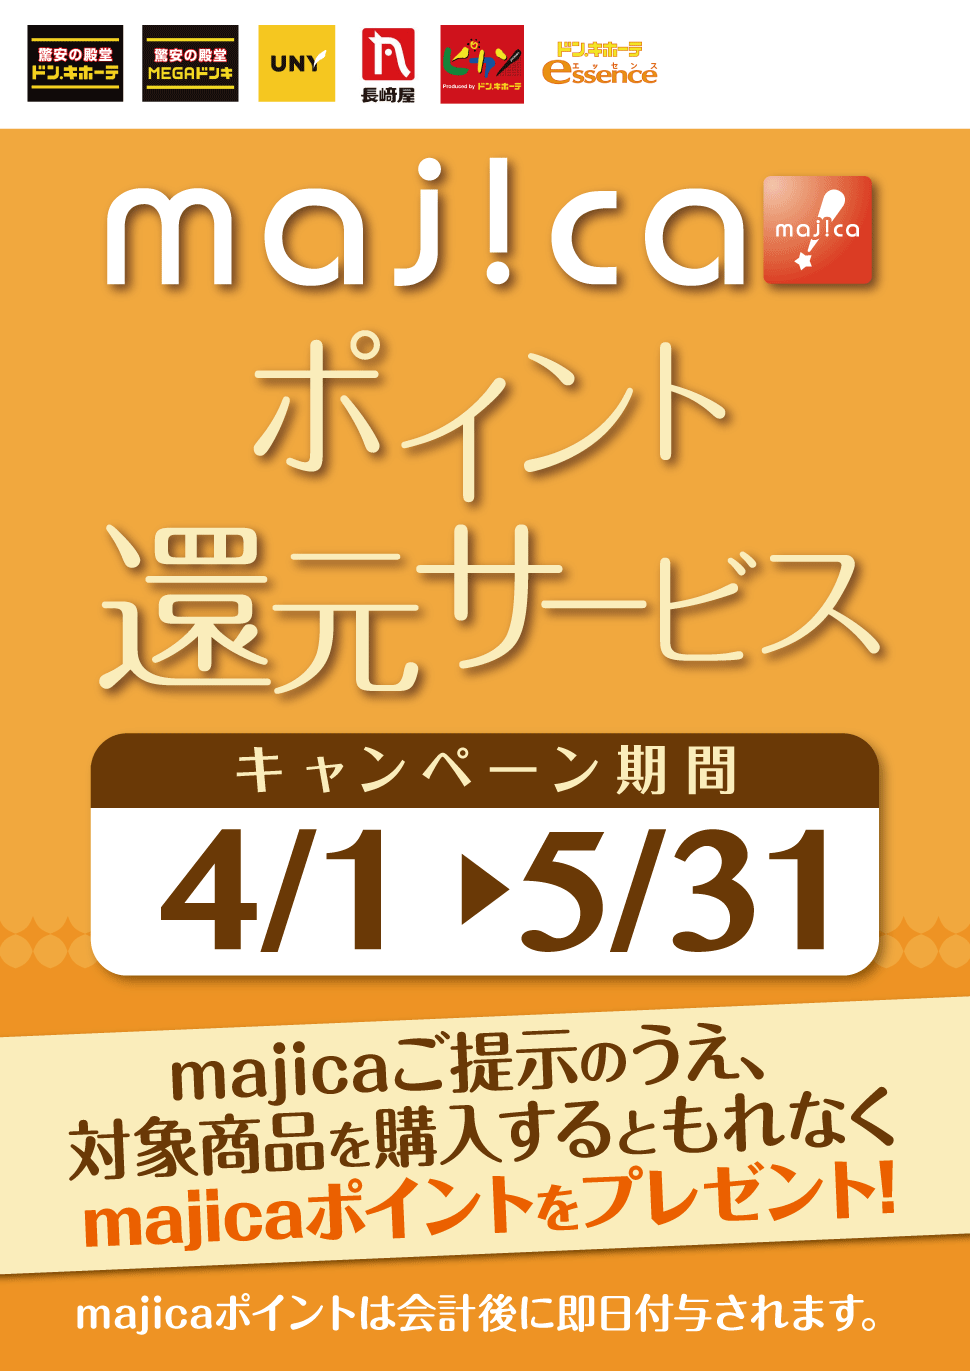 majicaポイント還元サービス「ライフスタイルキャンペーン」